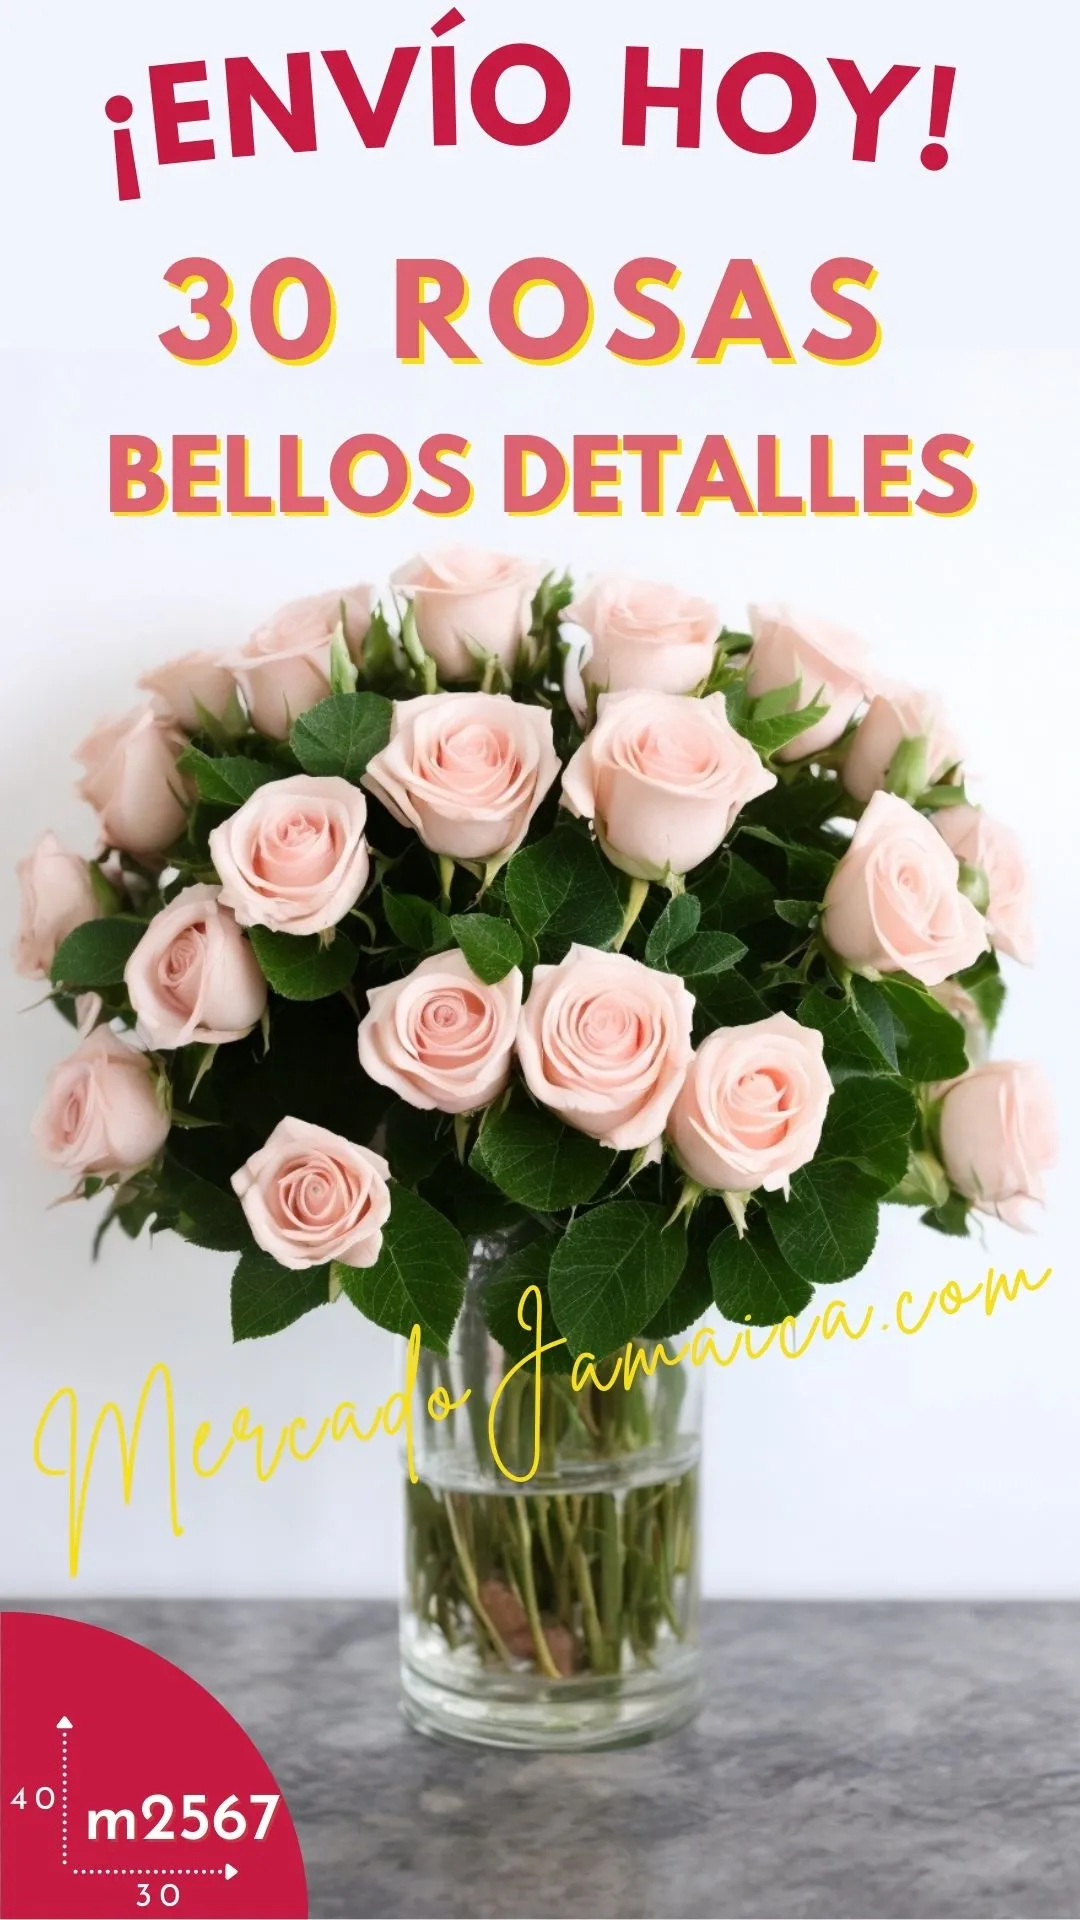 30 Rosas bellos detalles, arreglos florales para sorprender !